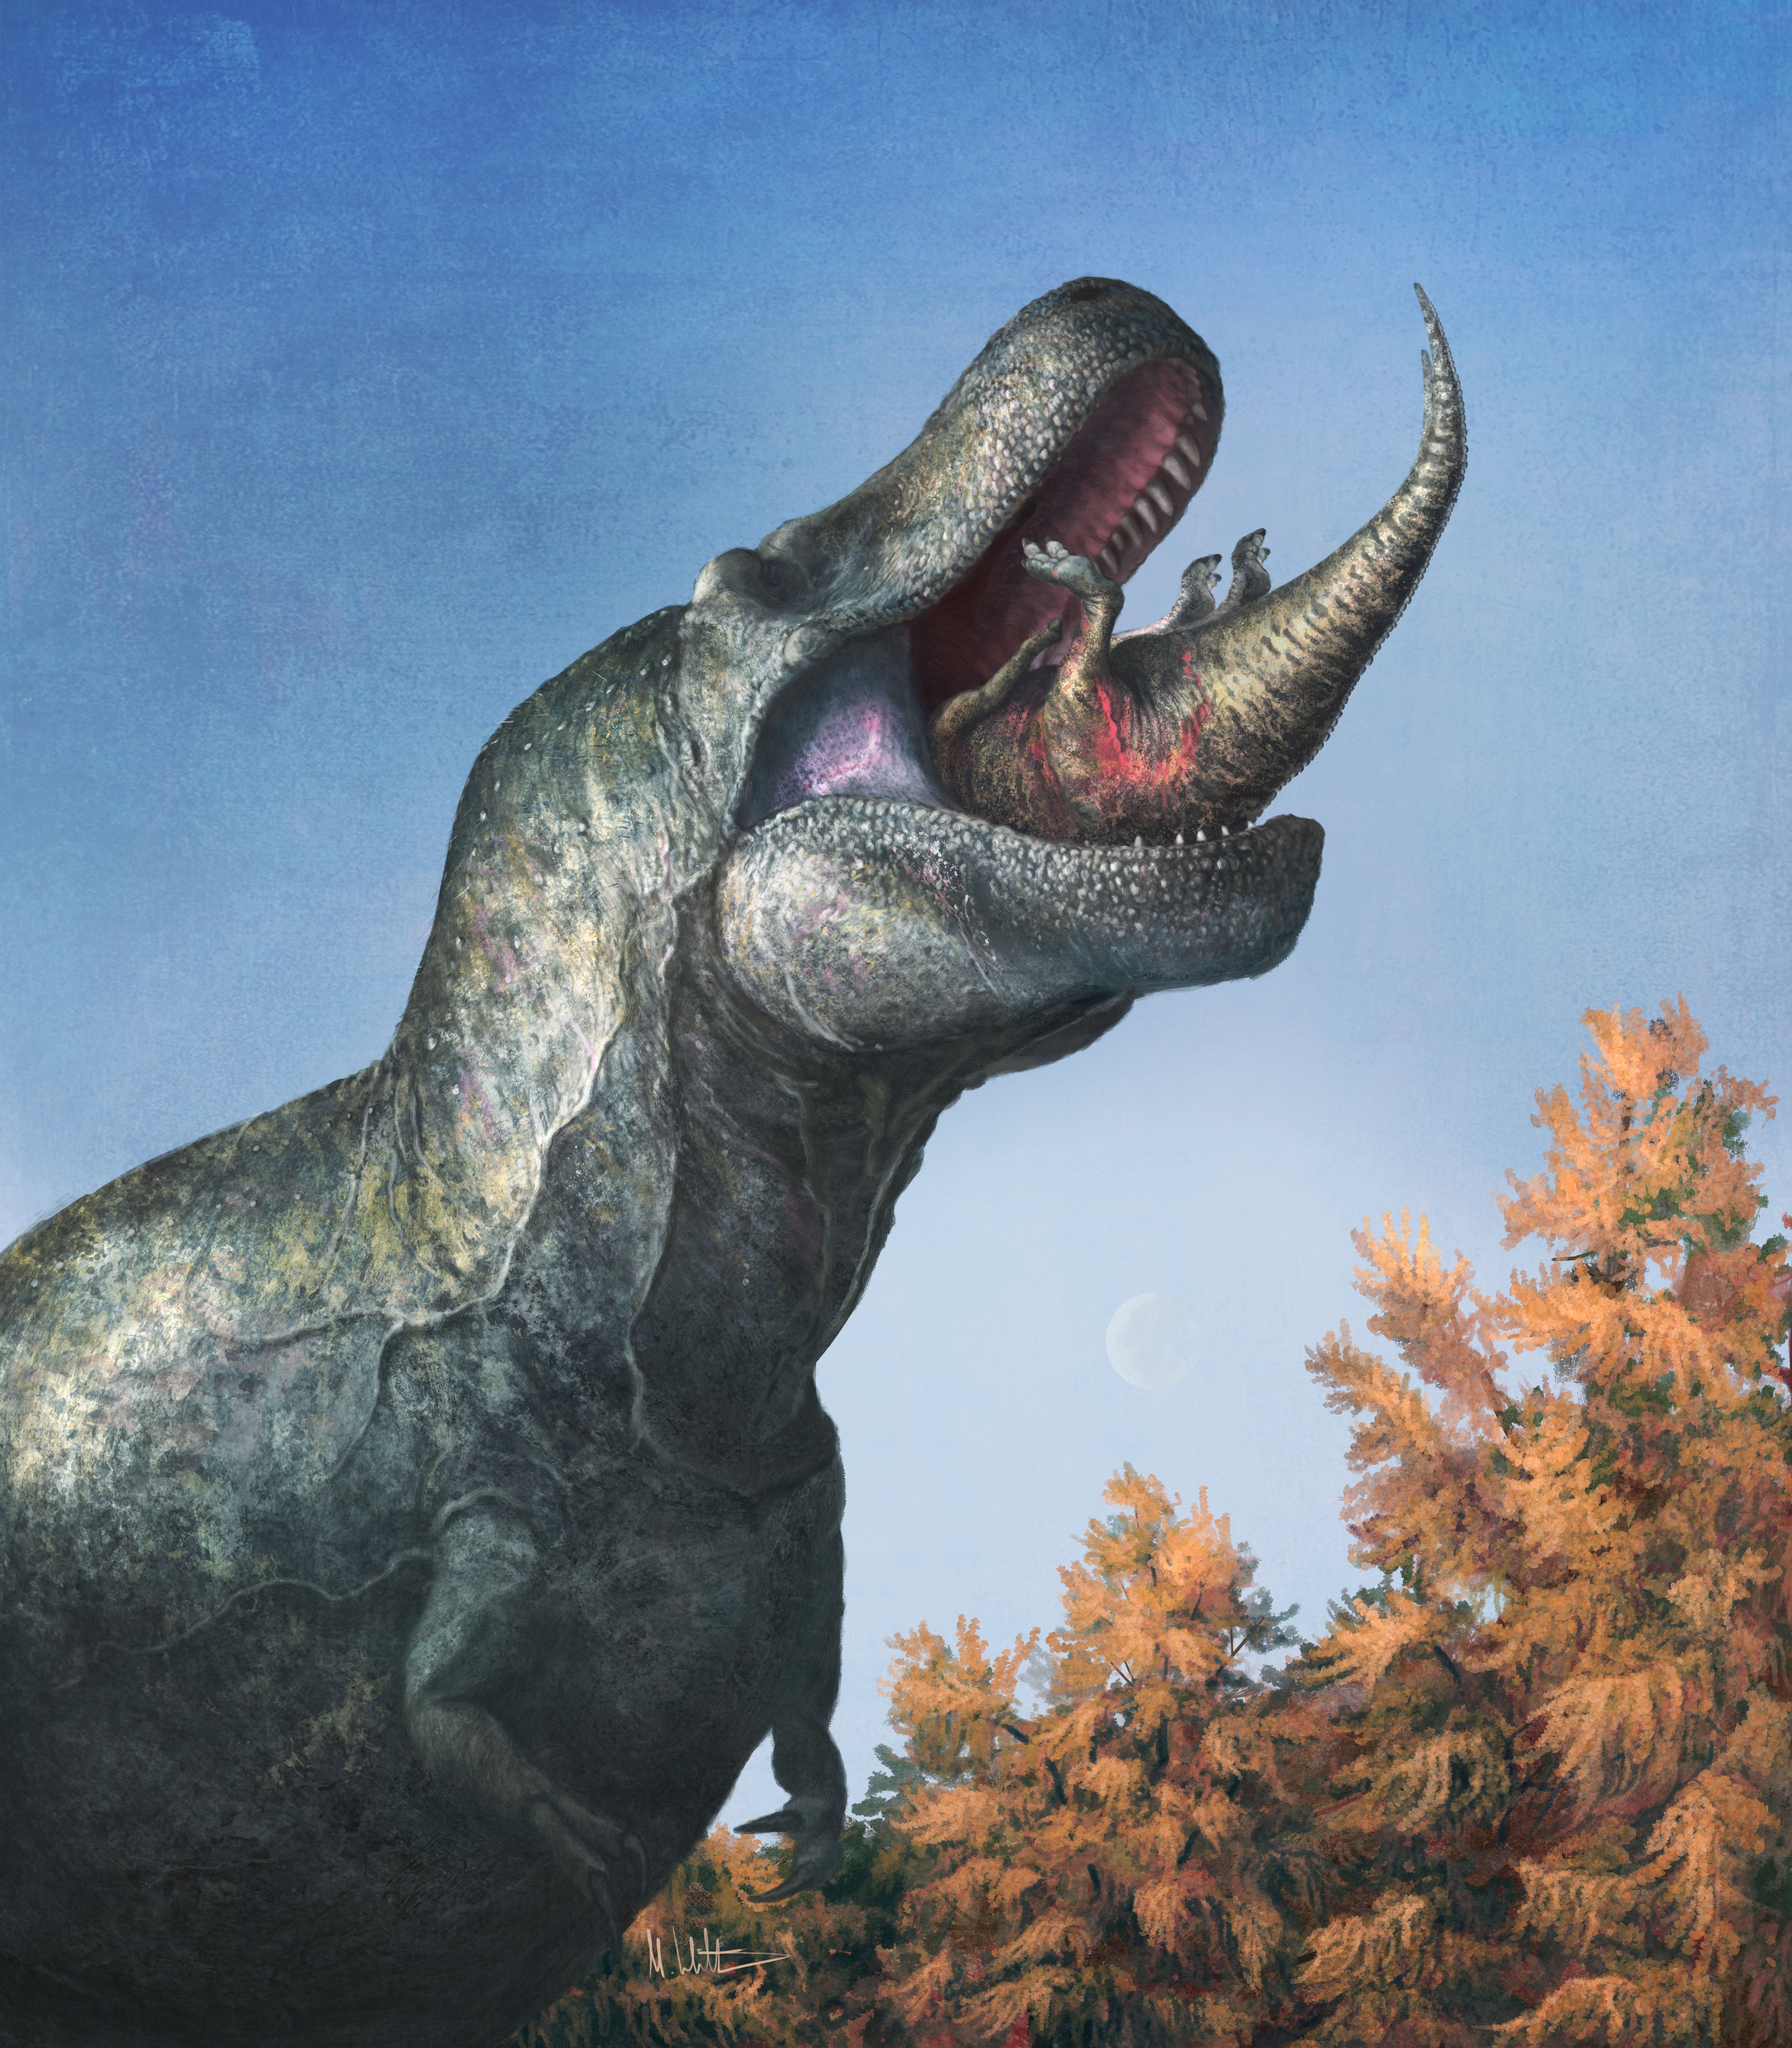 An illustration of a tyrannosaur swallowing a juvenile Edmontosaurus. (Illustration: Mark P. Witton)